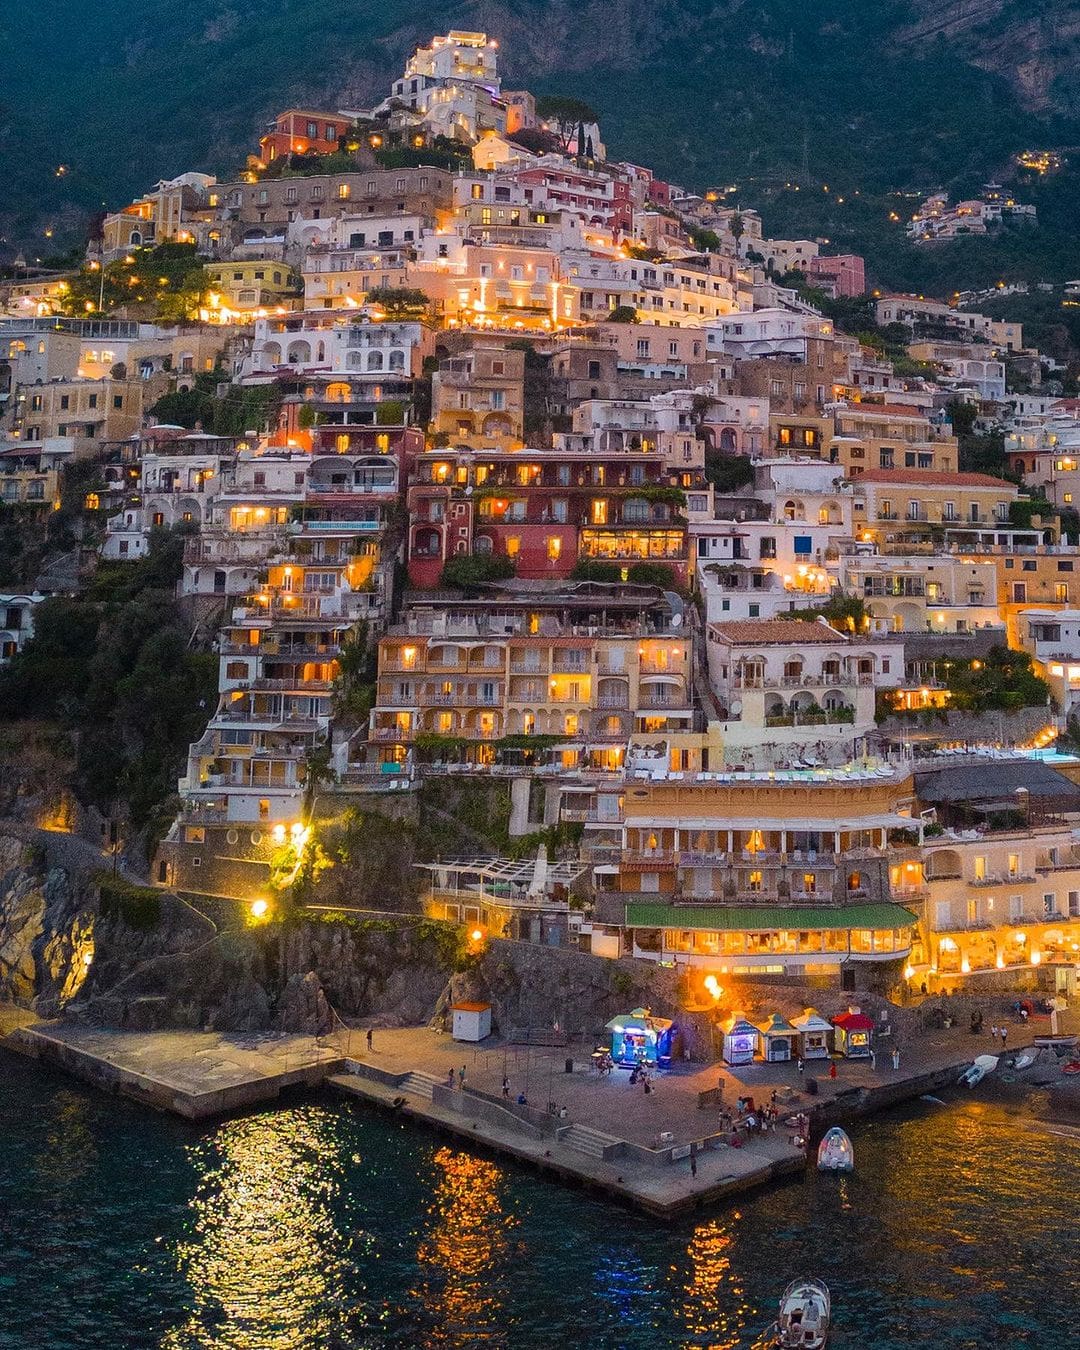 Vista nocturna de la Costa Amalfitana con luces centelleantes a lo largo de la costa, reflejando un paisaje marino encantador y un ambiente vibrante."